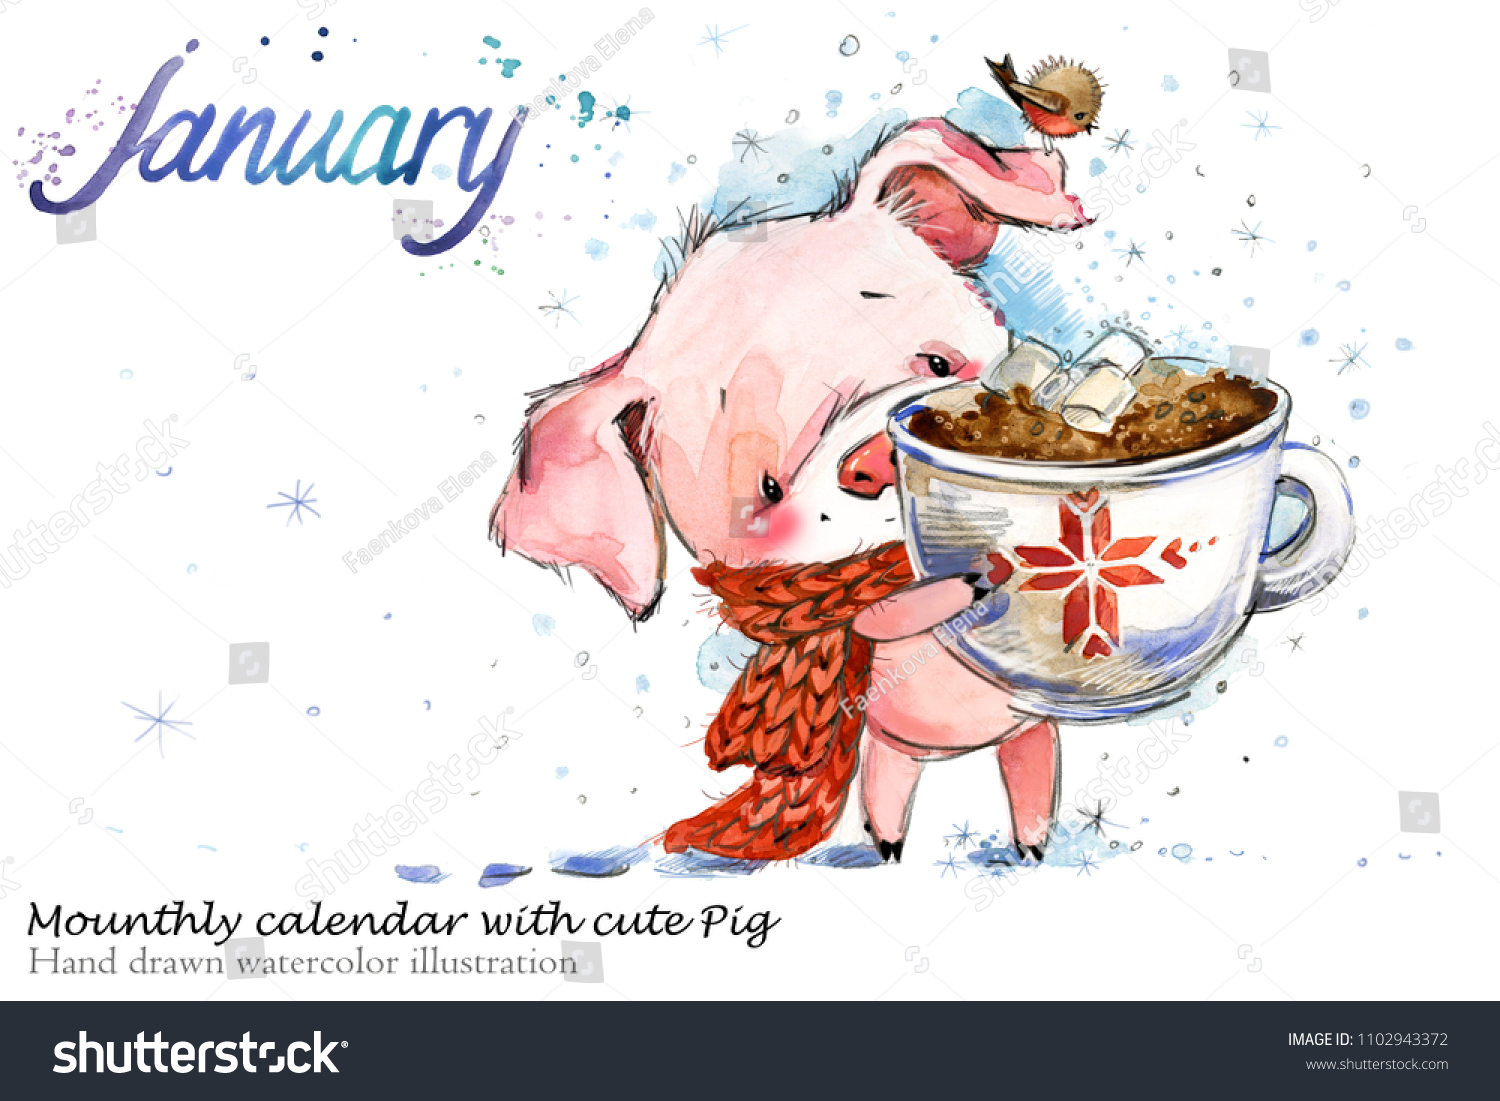 かわいい豚手描きの水彩イラスト 鳩月暦1月 のイラスト素材